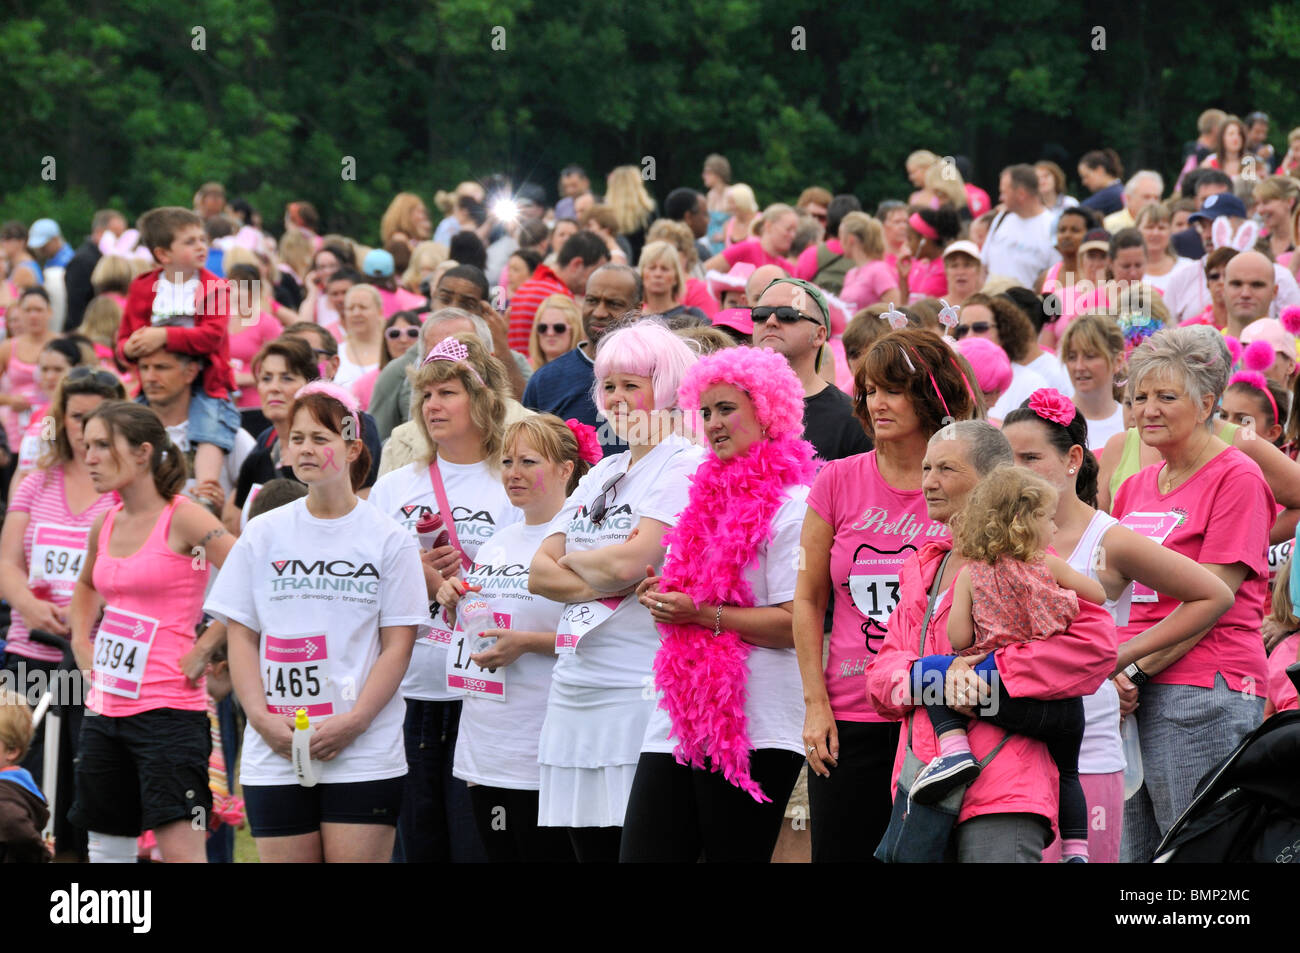 Multitud en rosa Cancer Research UK en una carrera por la vida evento de caridad. Foto de stock